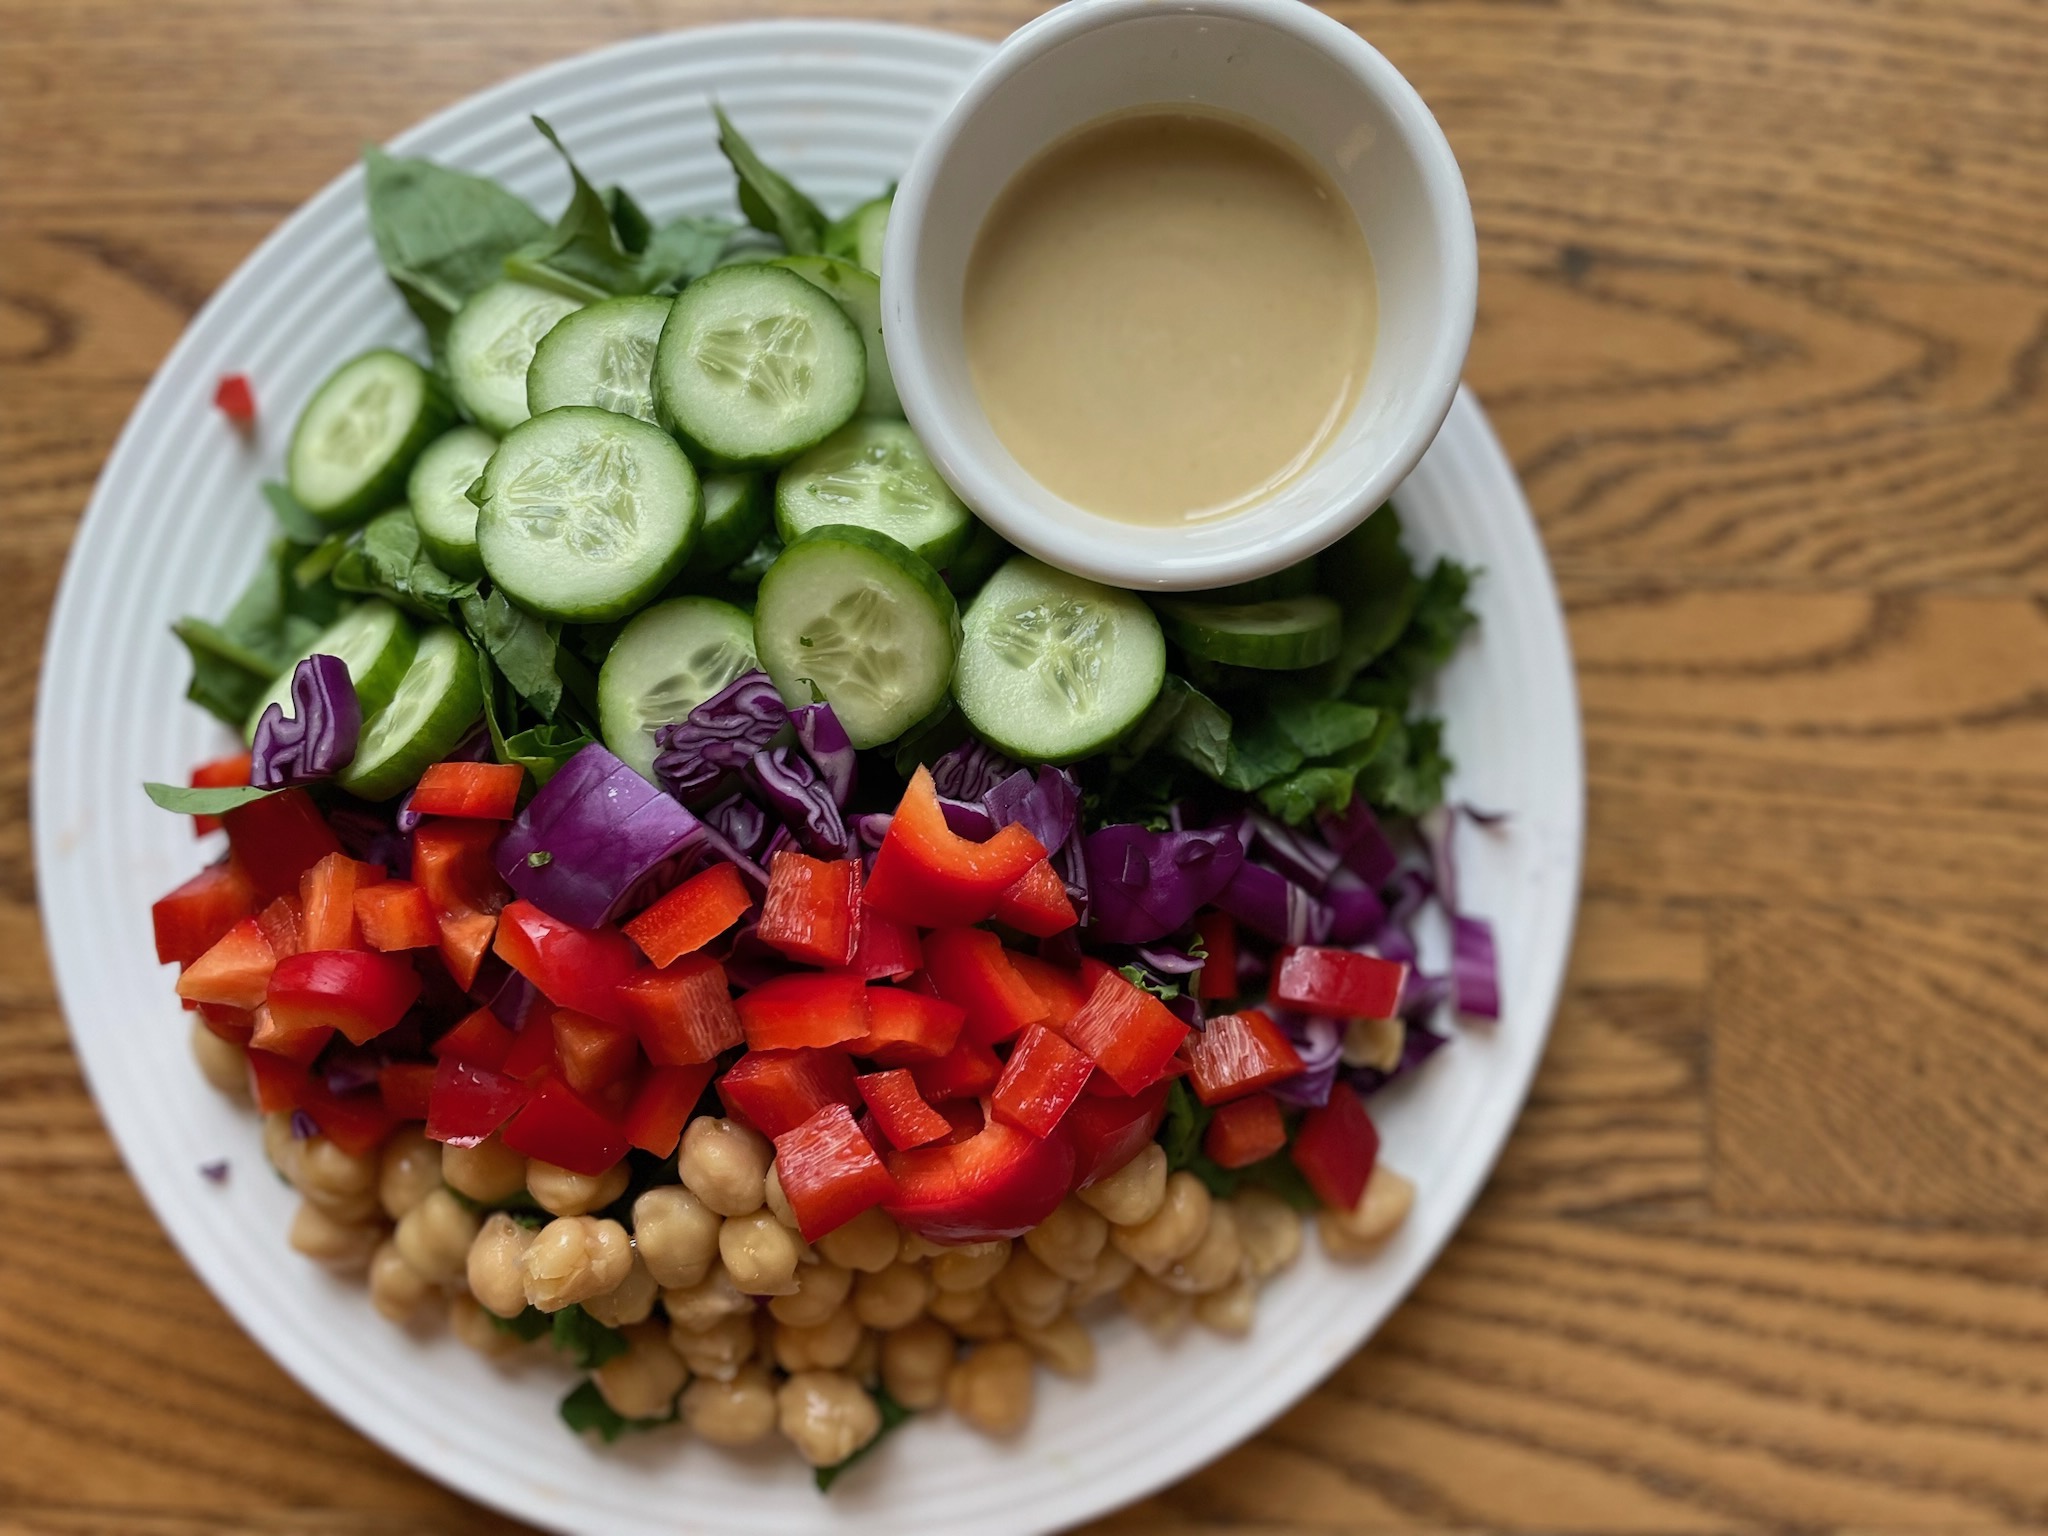 Kidney-Friendly Mediterranean Salad